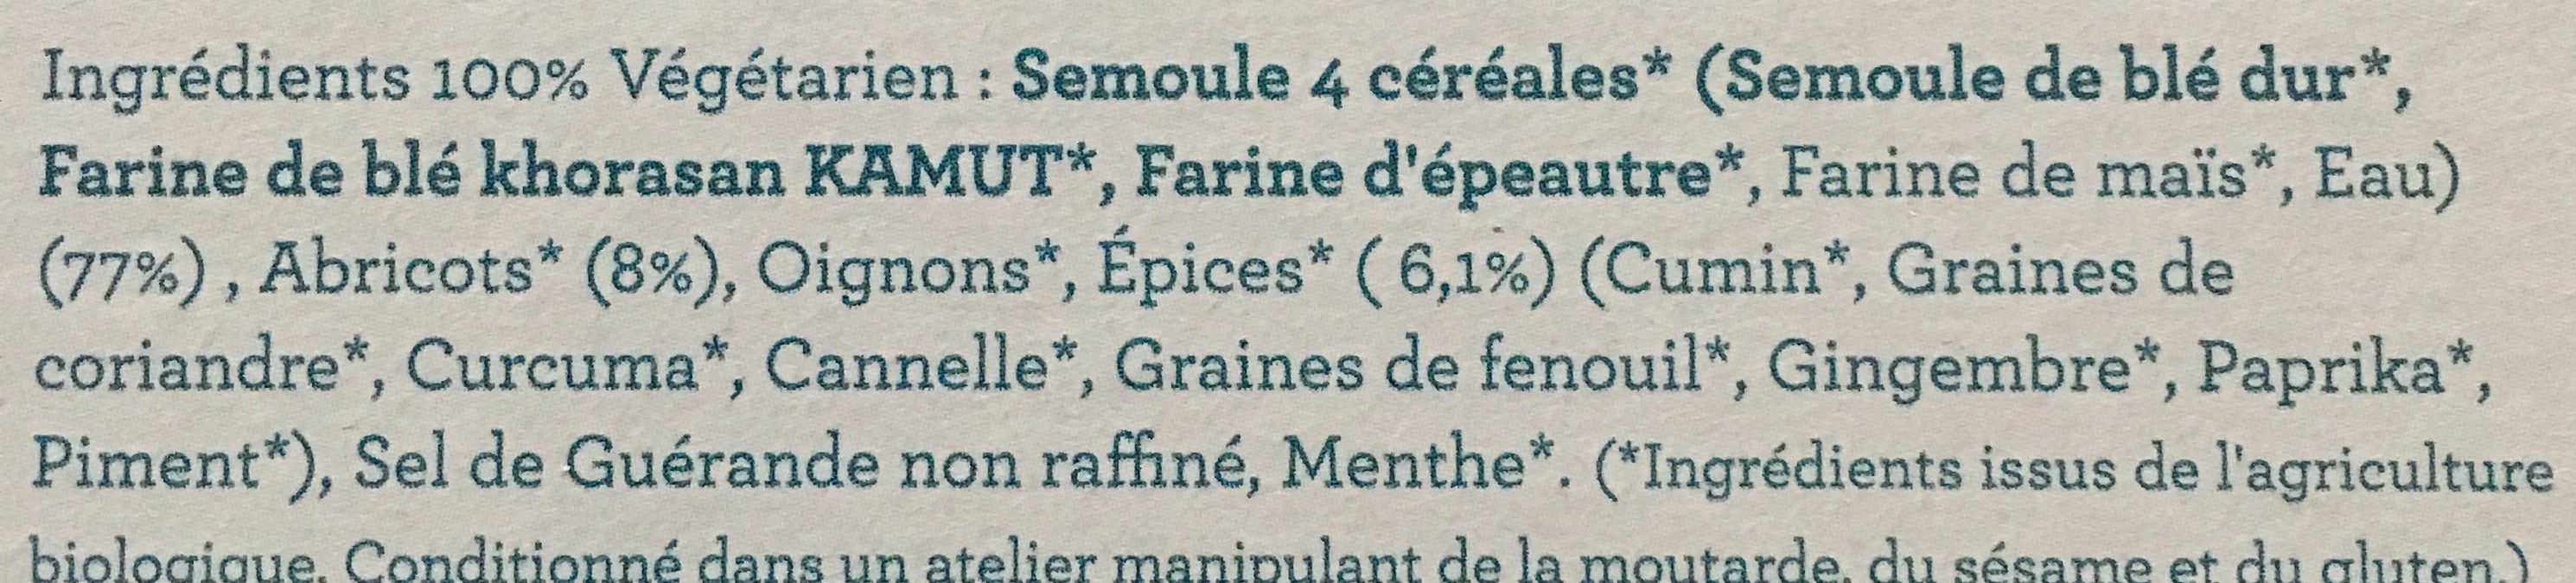 Couscous 4 cereales aux abricots et epices - Ingredients - fr